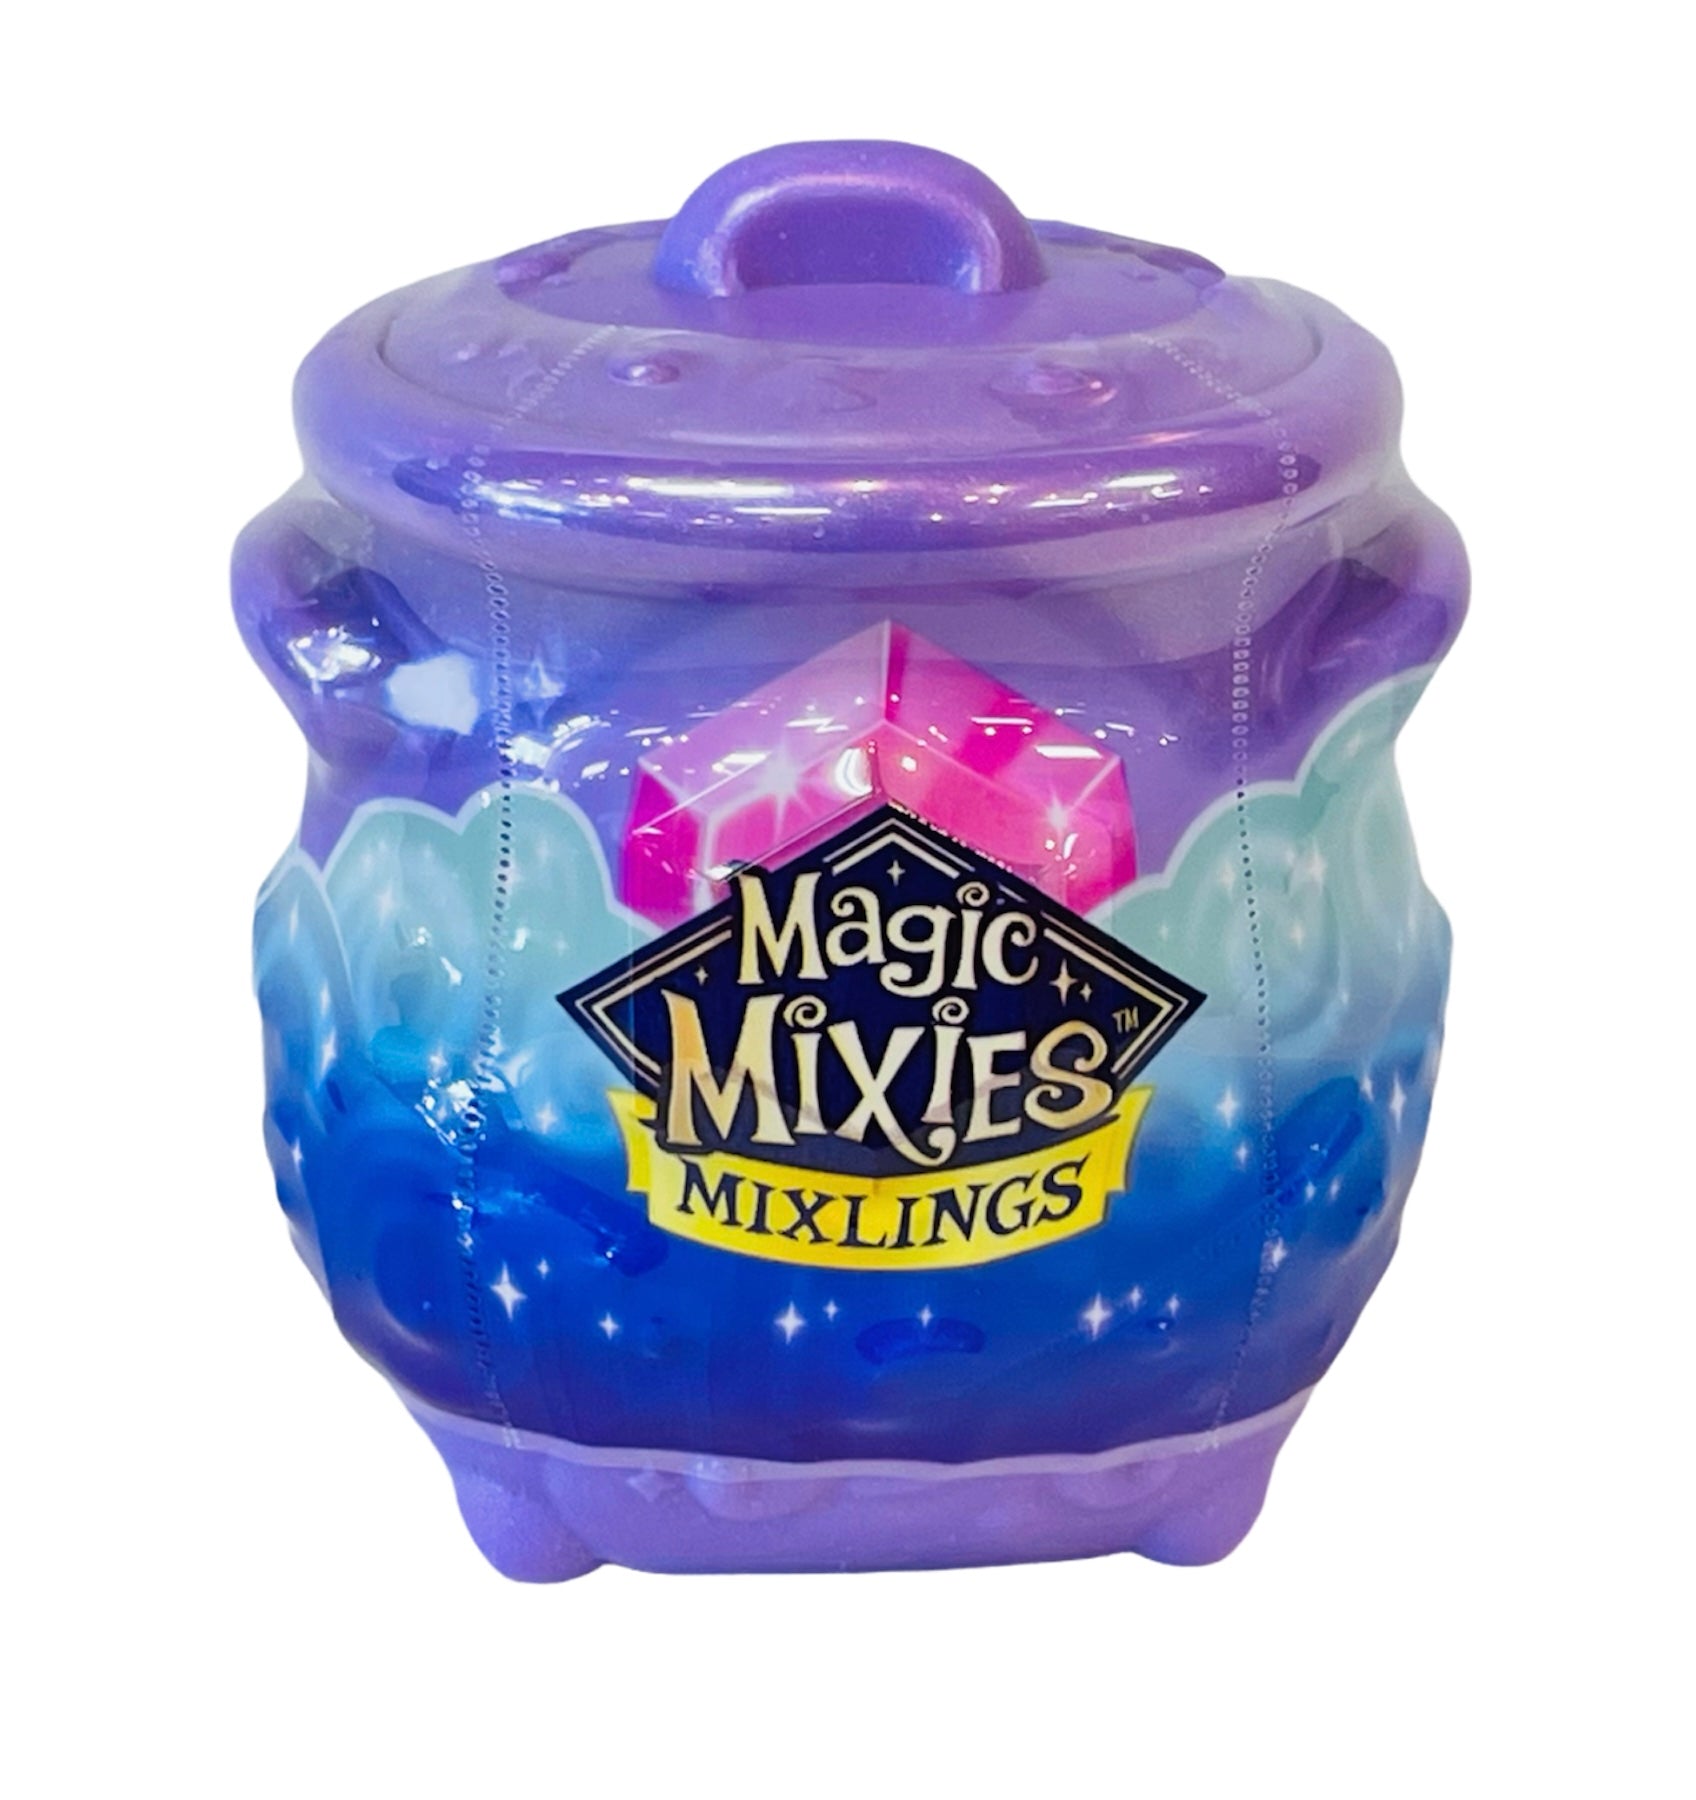 Magic Mixies Mixlings Collector's Cauldron | NFM